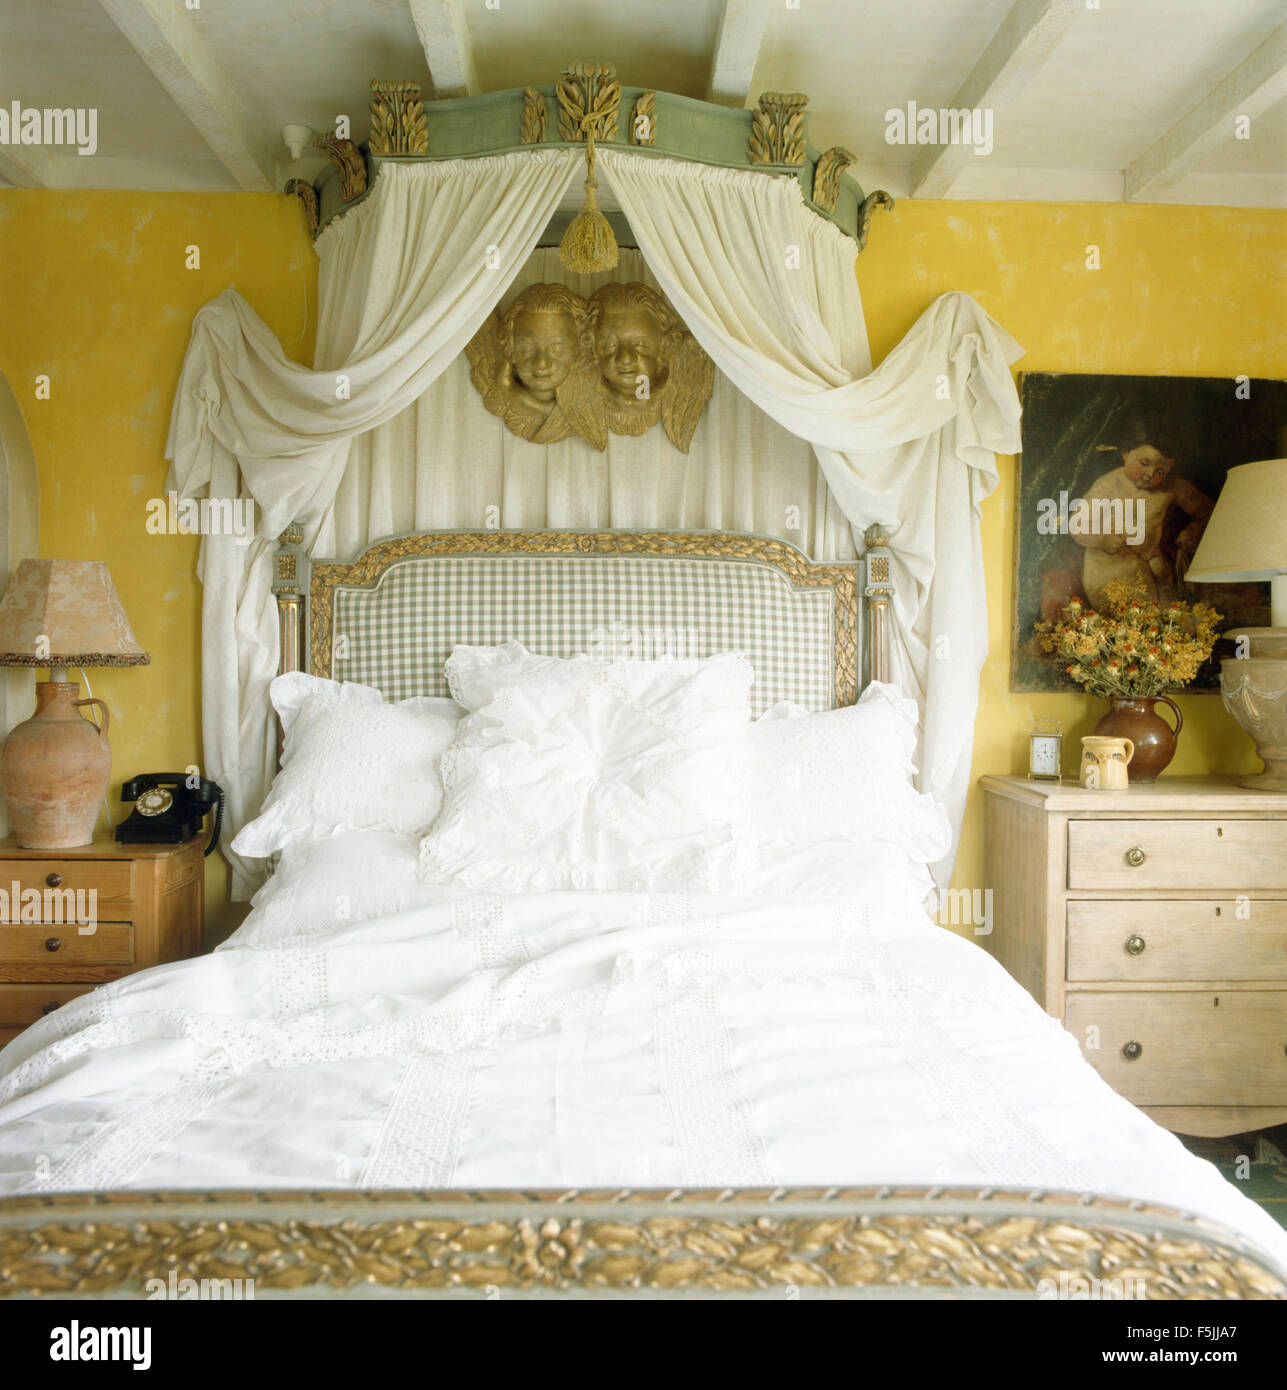 Auvent orné avec des rideaux blancs sur lit avec draps garnis de dentelle dans une chambre jaune années 80 Banque D'Images